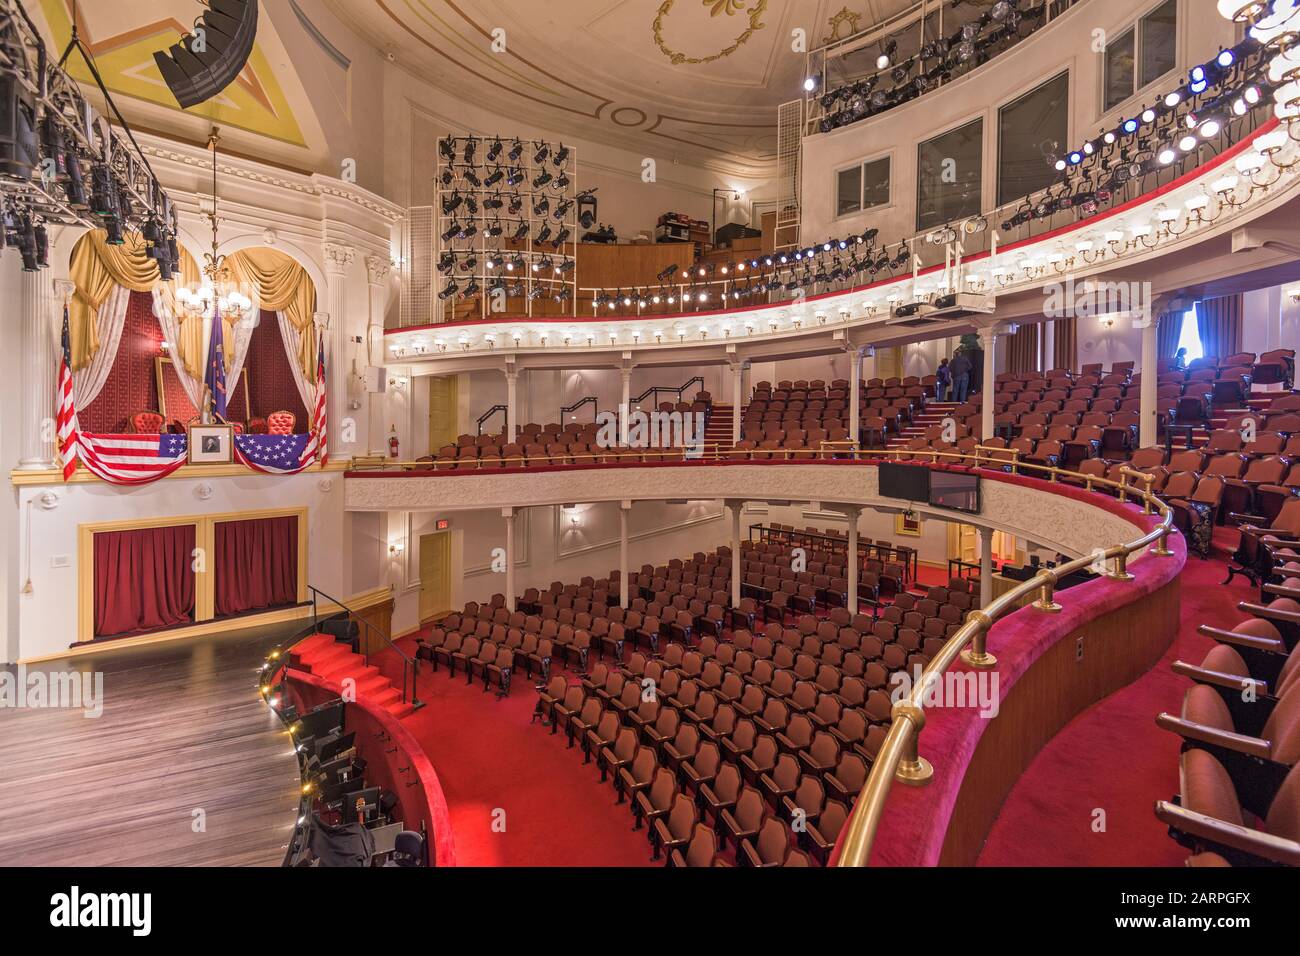 Washington - 12. APRIL 2015: Bühne und Sitzgelegenheiten des Ford's Theatre. Das Theater ist als Ort des Attentats von Präsident Abraham Lincoln berühmt Stockfoto